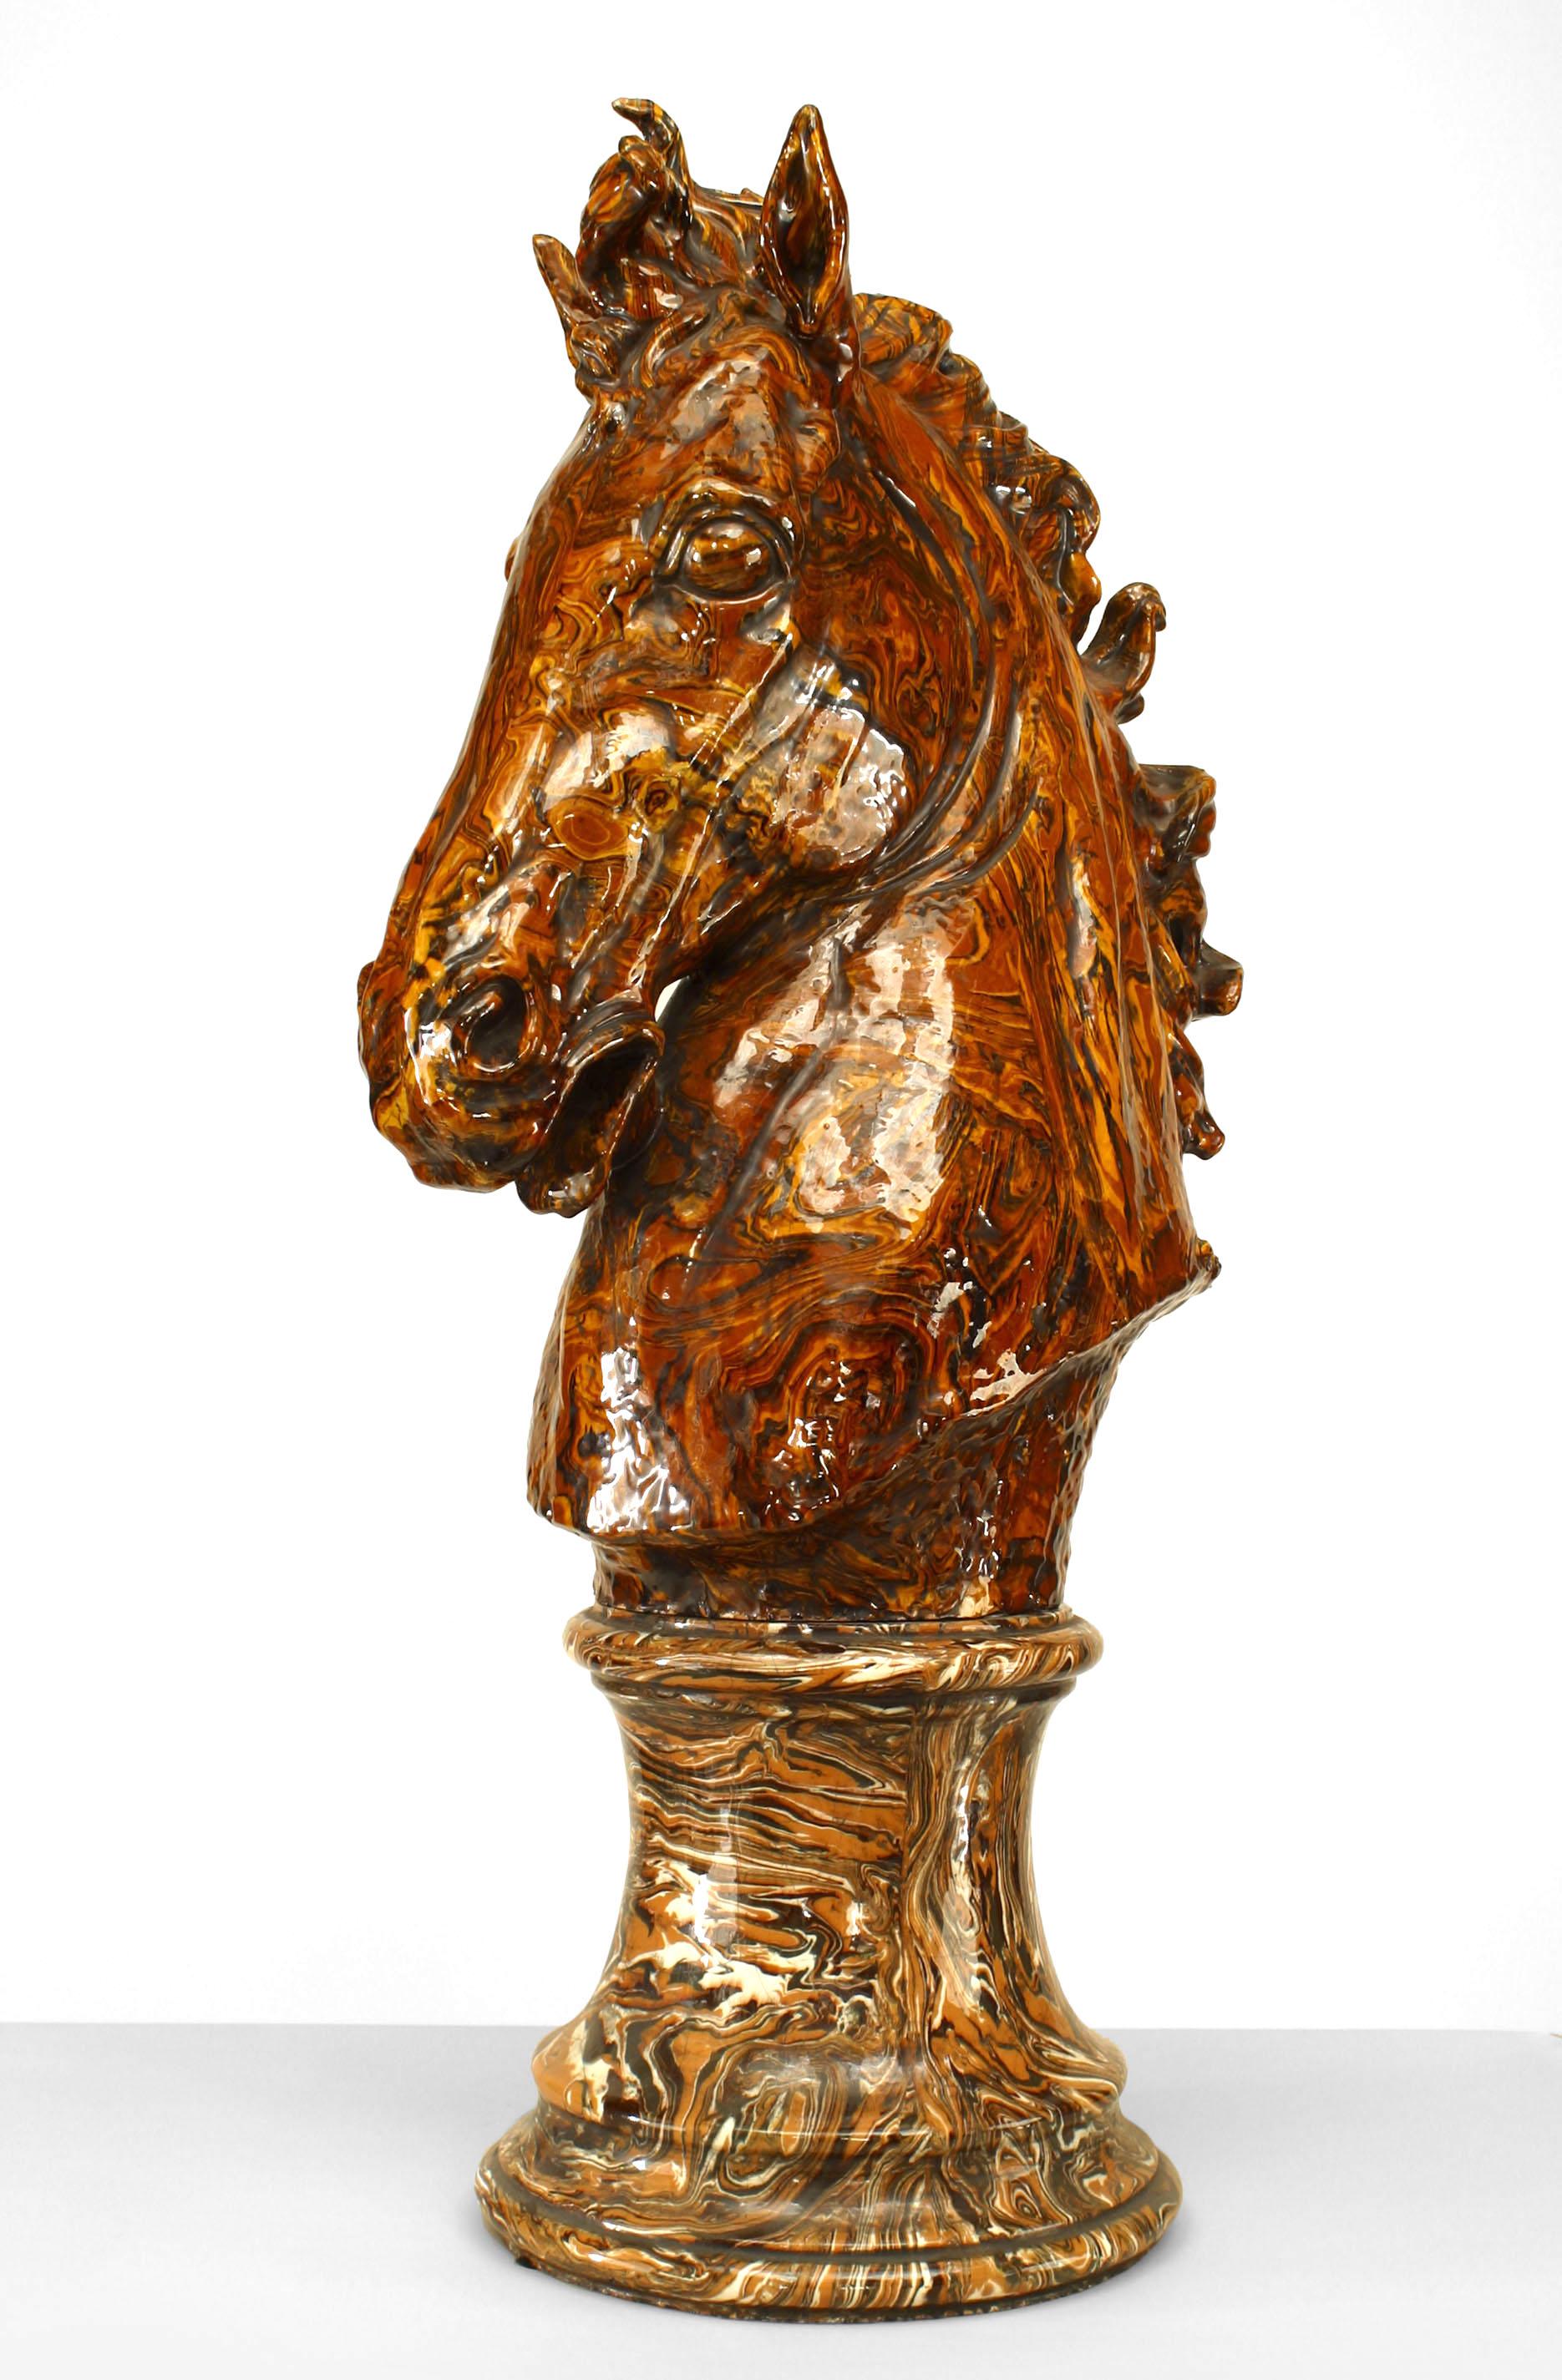 Englische viktorianische braun marmorierte Glasur Terrakotta lebensgroße Pferdekopf Figur auf rundem Sockel (zwei Teile)
